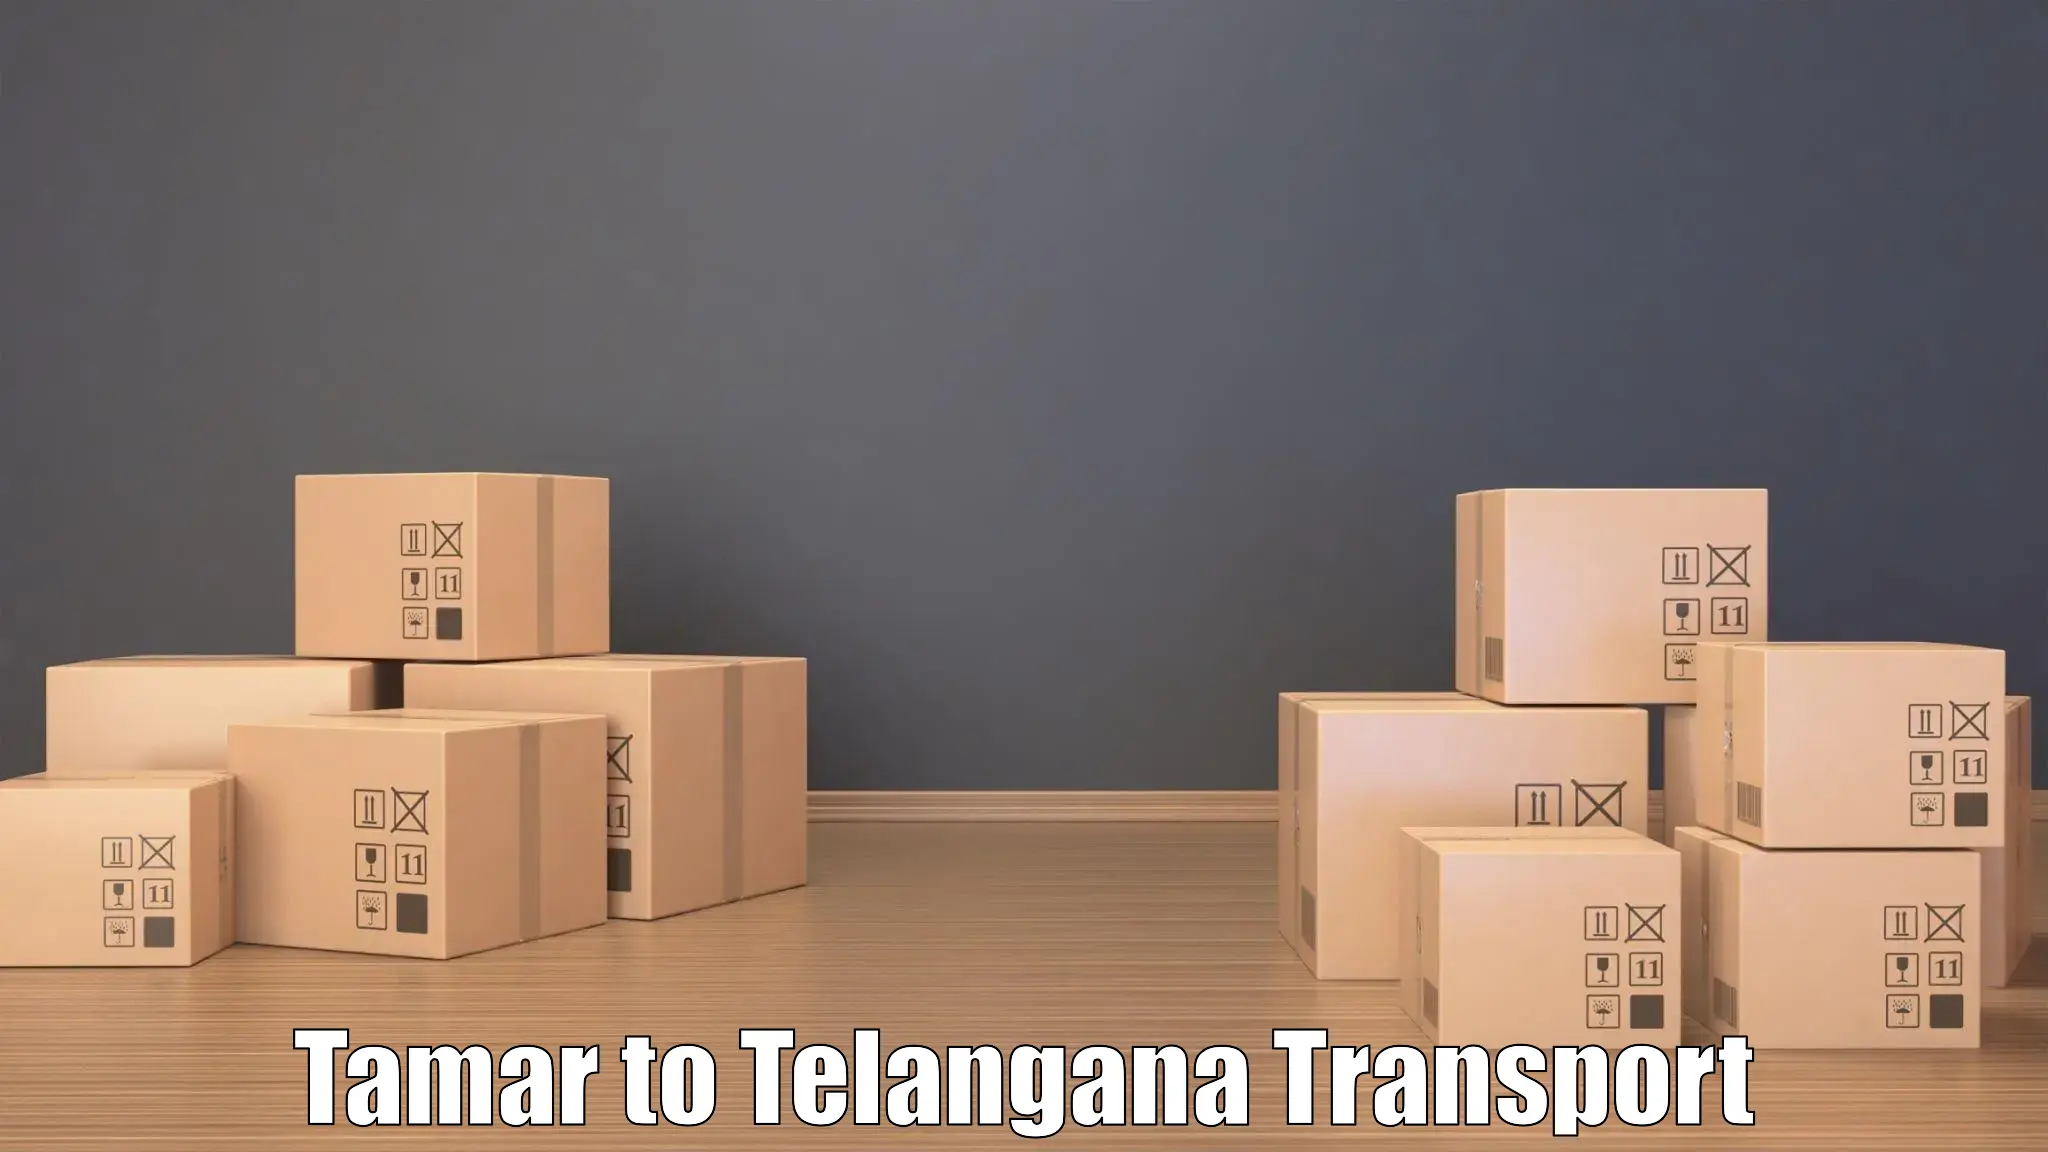 Logistics transportation services Tamar to Jangaon